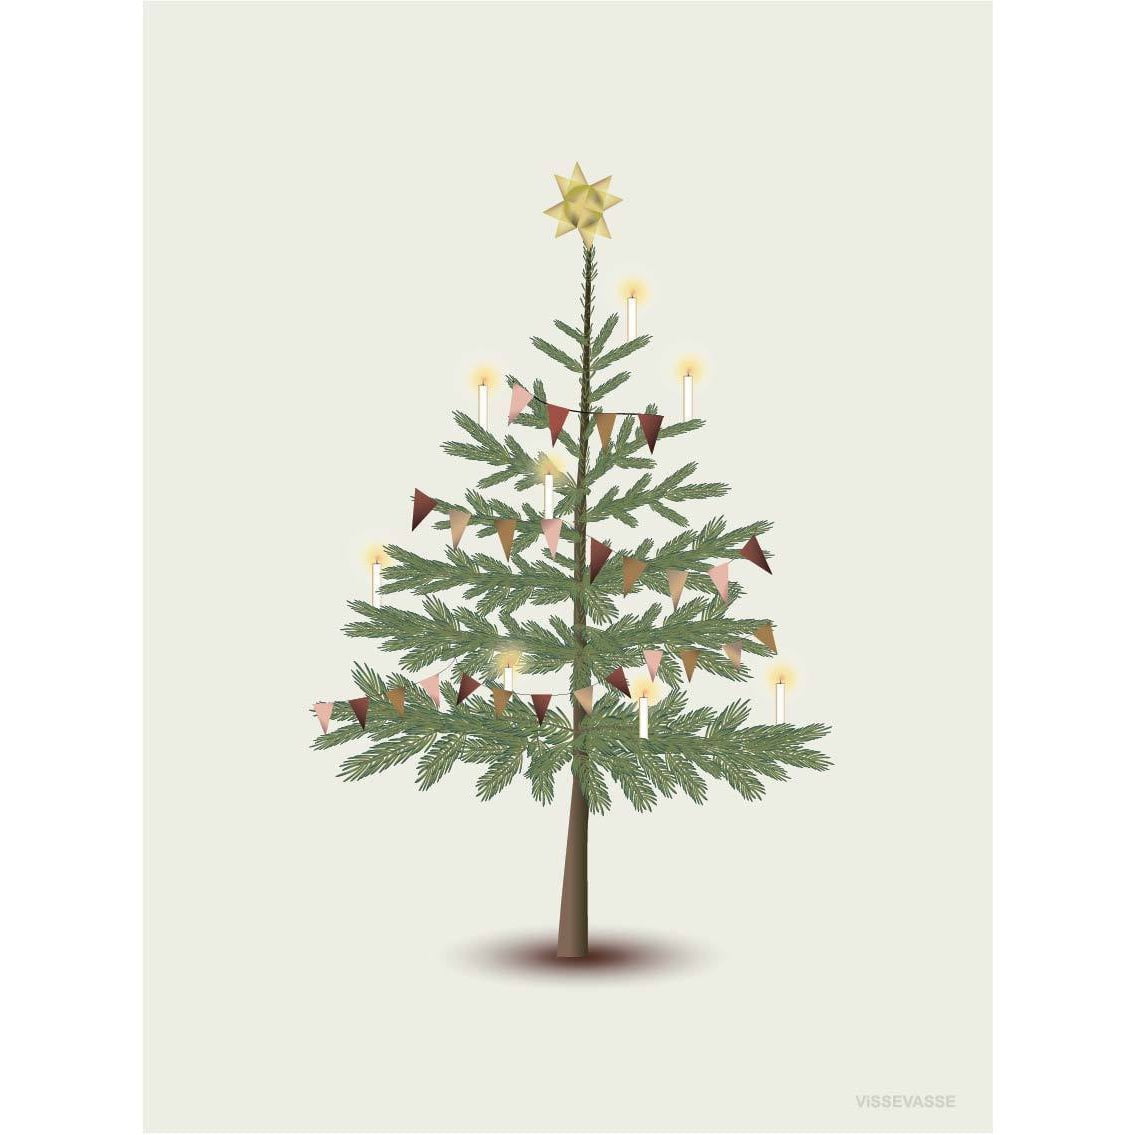 Vissevasse Der Weihnachtsbaum Grußkarte, 10,5x15cm